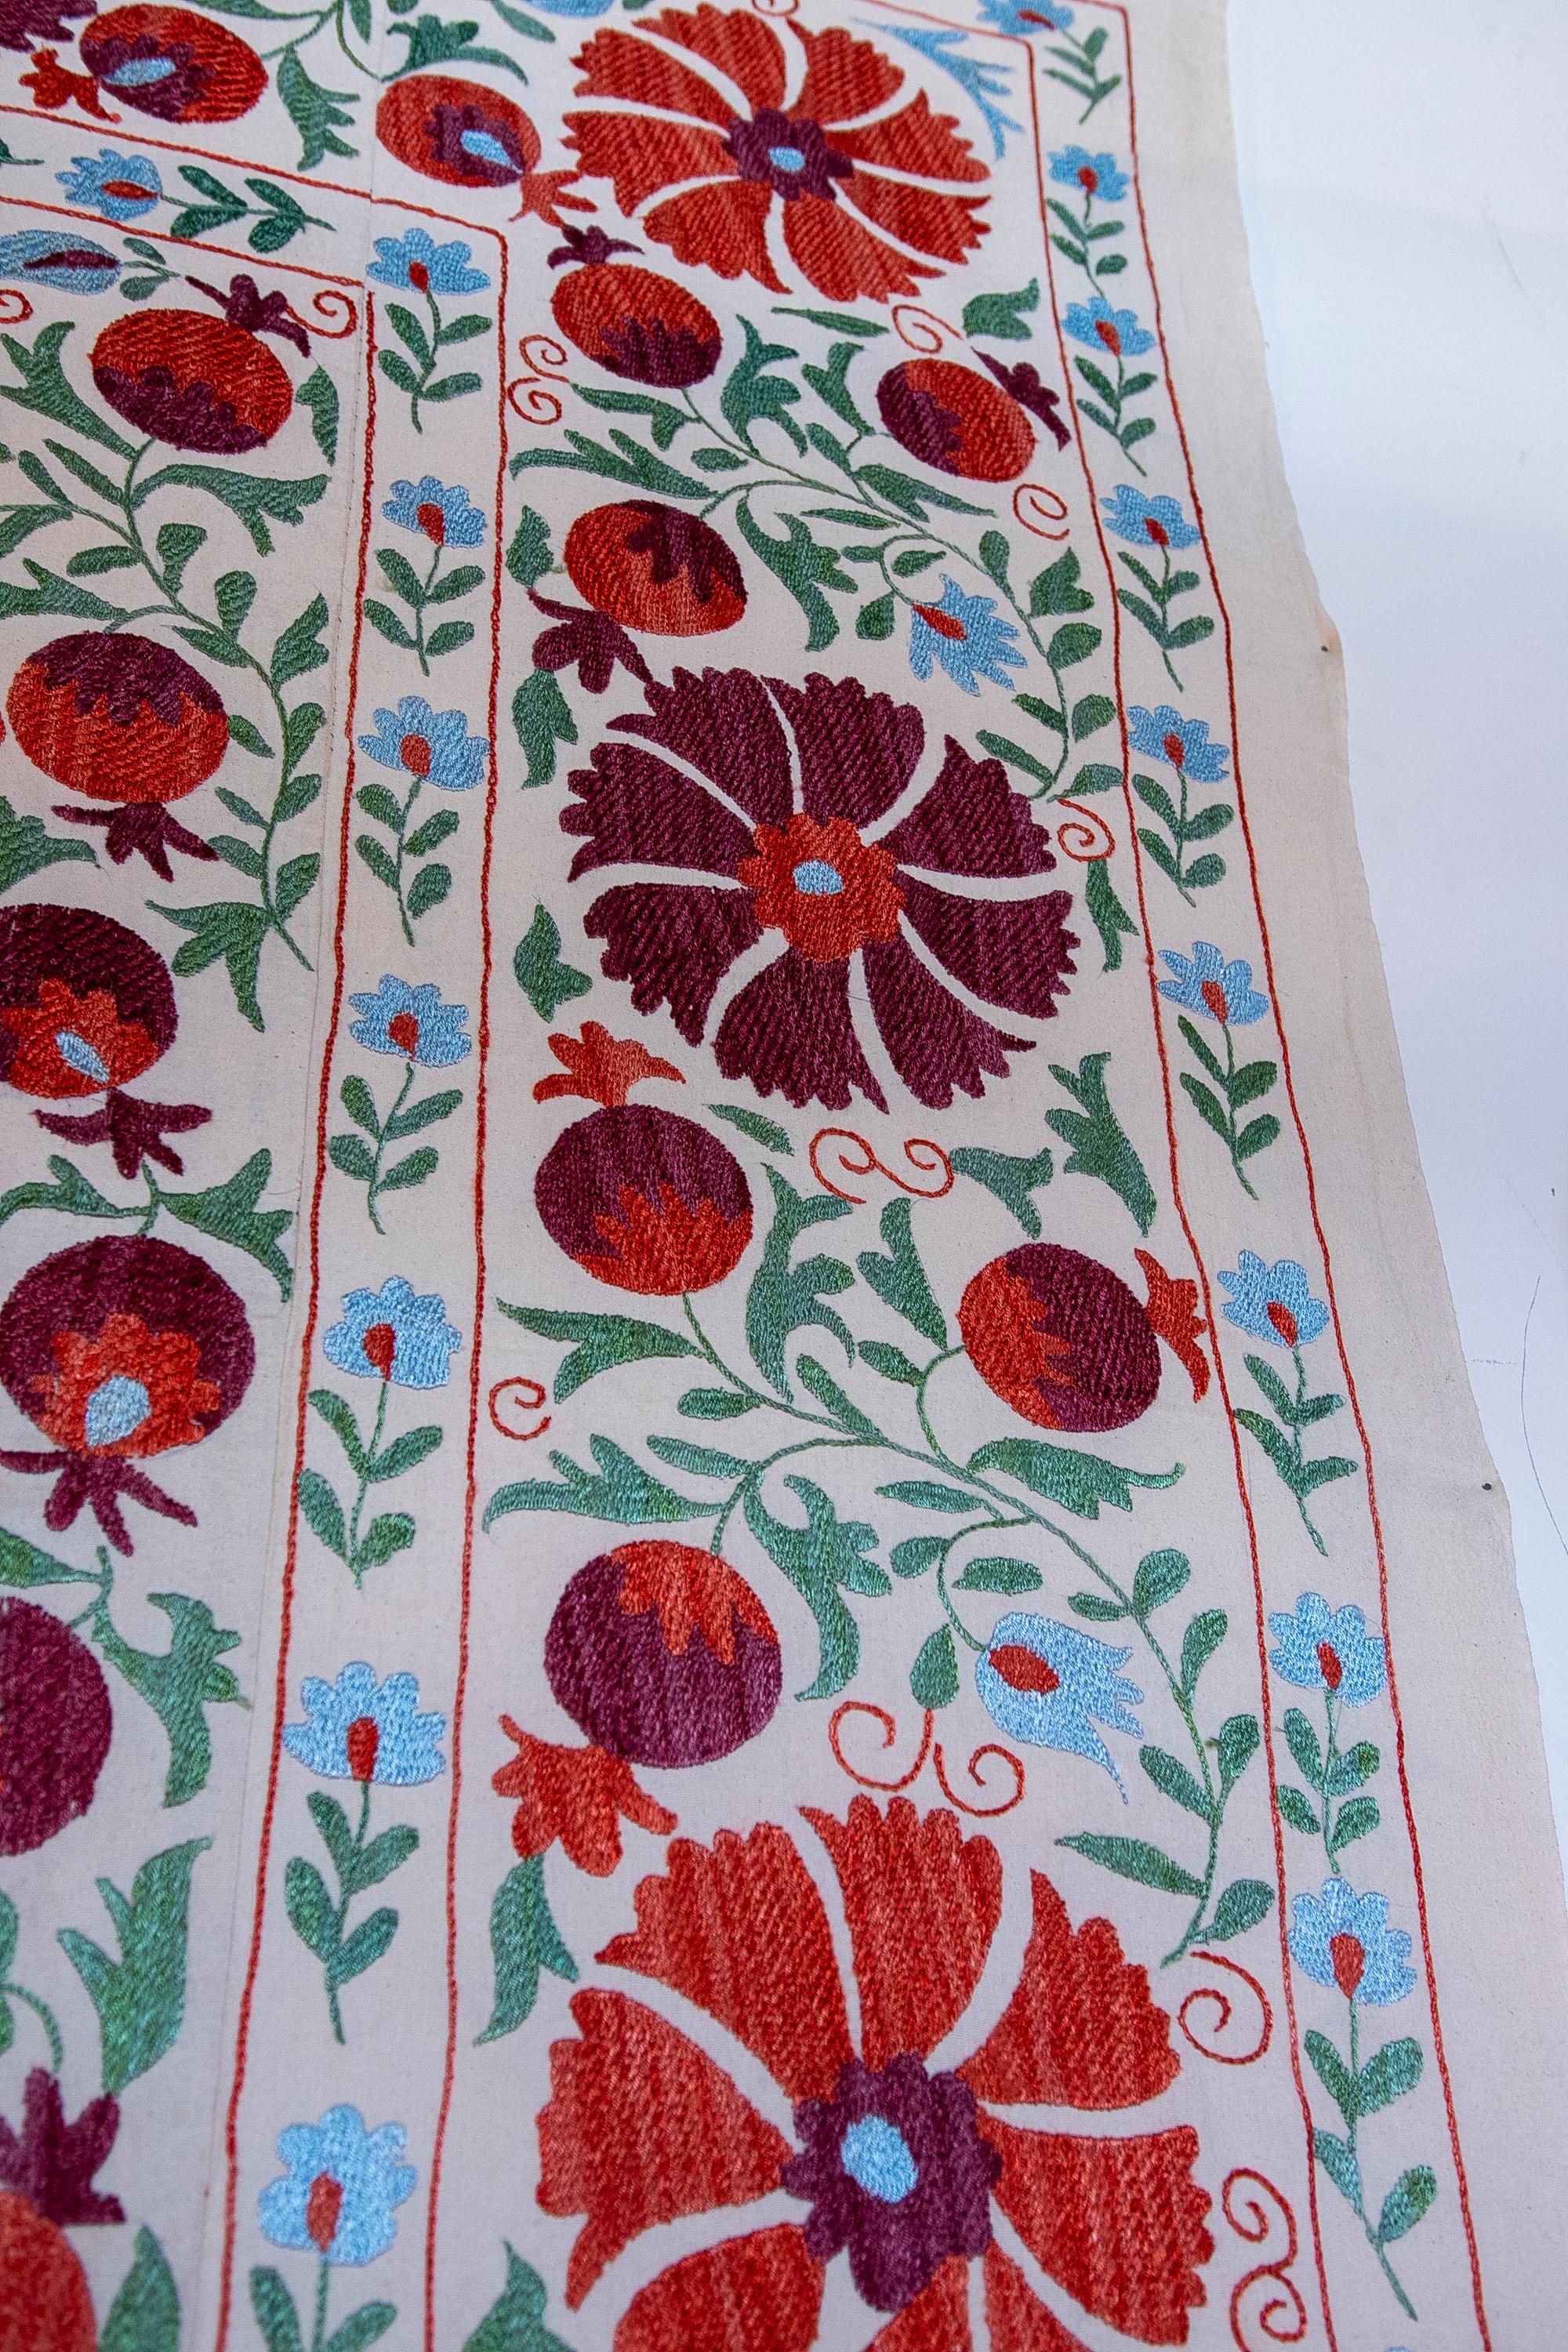 1970s Uzbekistan Hand Stitched Fabric Known as Suzani  3